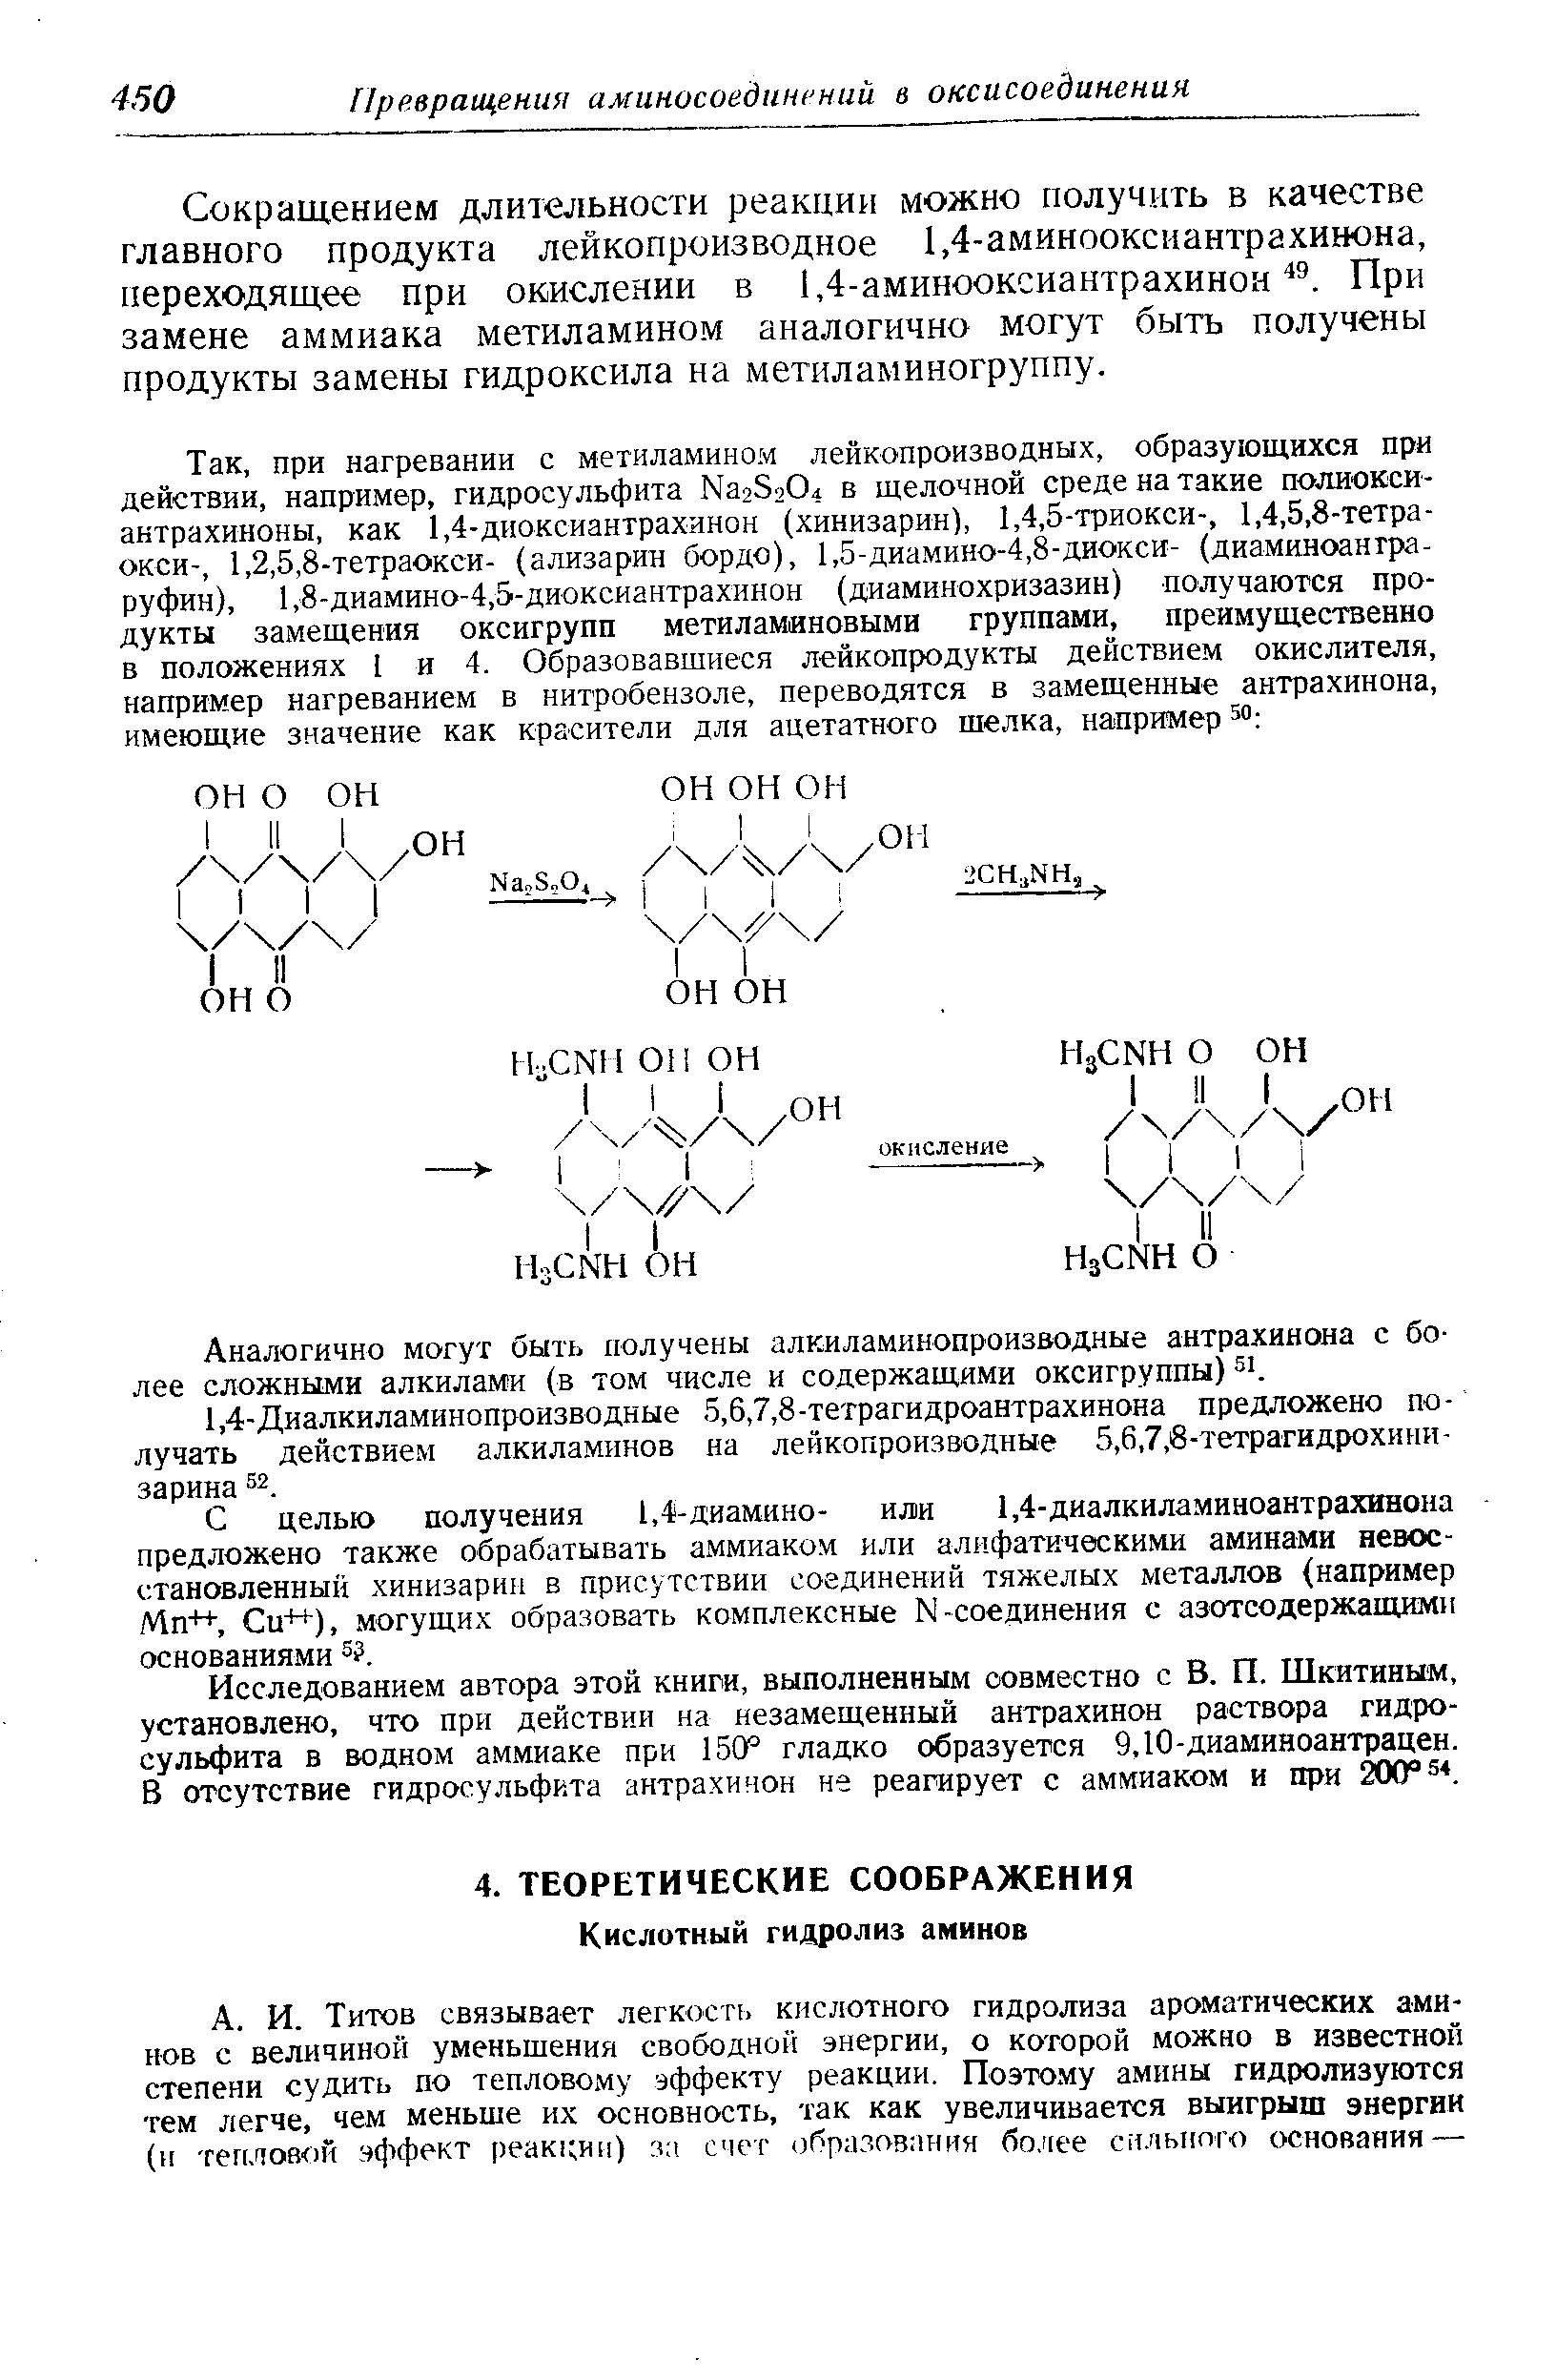 Сокращением длительности реакции можно получить в качестве главного продукта лейкопроизводное 1,4-аминооксиантрахинона, переходящее при окислении в 1,4-аминооксиантрахинон При замене аммиака метиламином аналогично могут быть получены продукты замены гидроксила на метиламиногруппу.